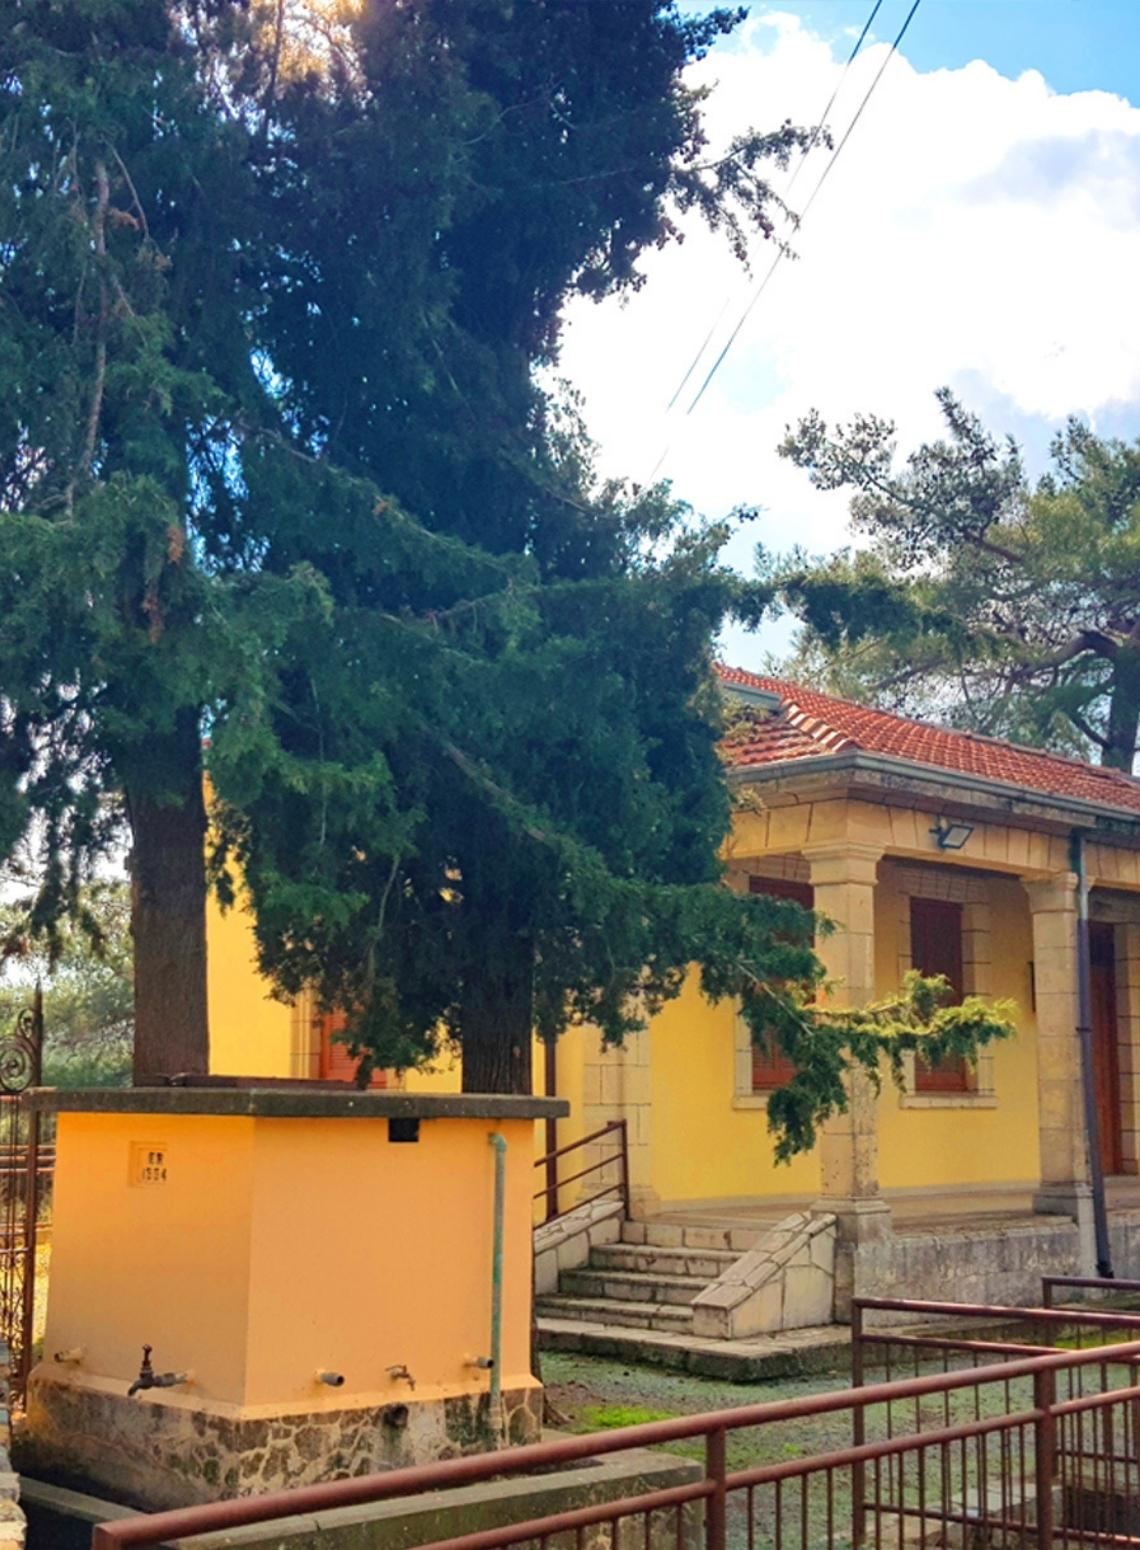 The School in Vavatsinia